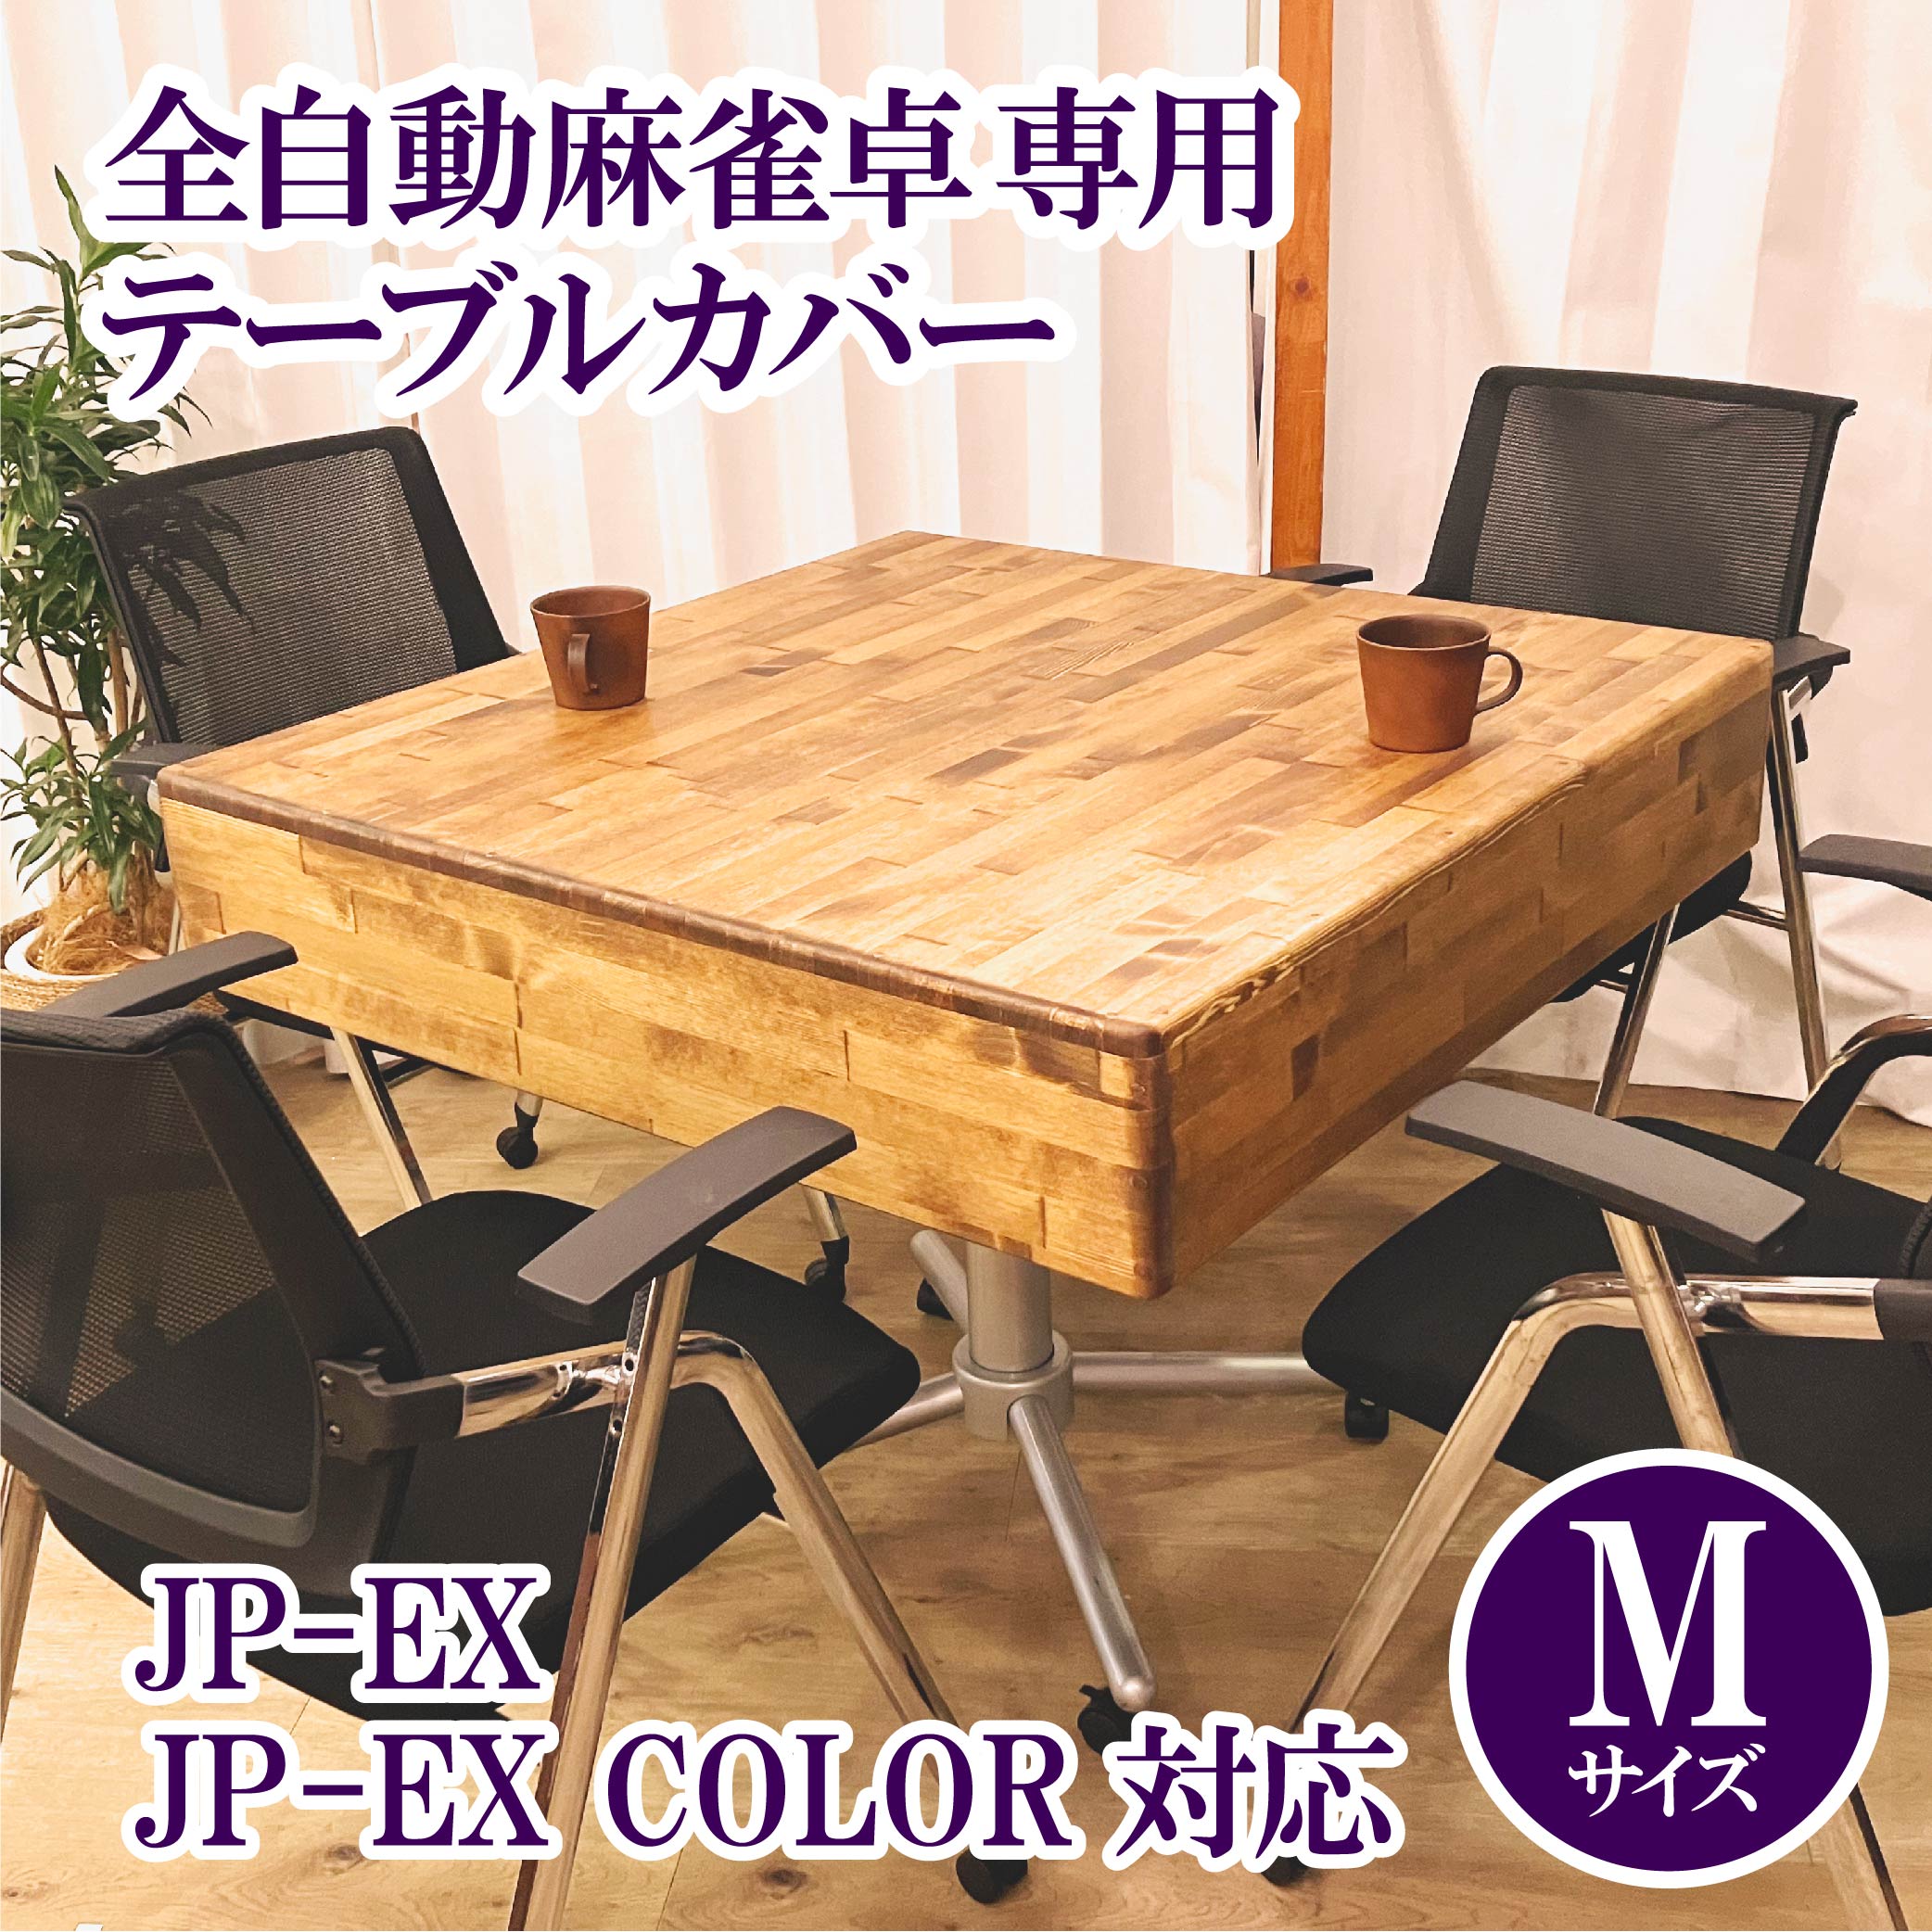 2月上旬ごろ出荷予定】【JP-EX,COLOR用】木製テーブルカバー 全自動 ...